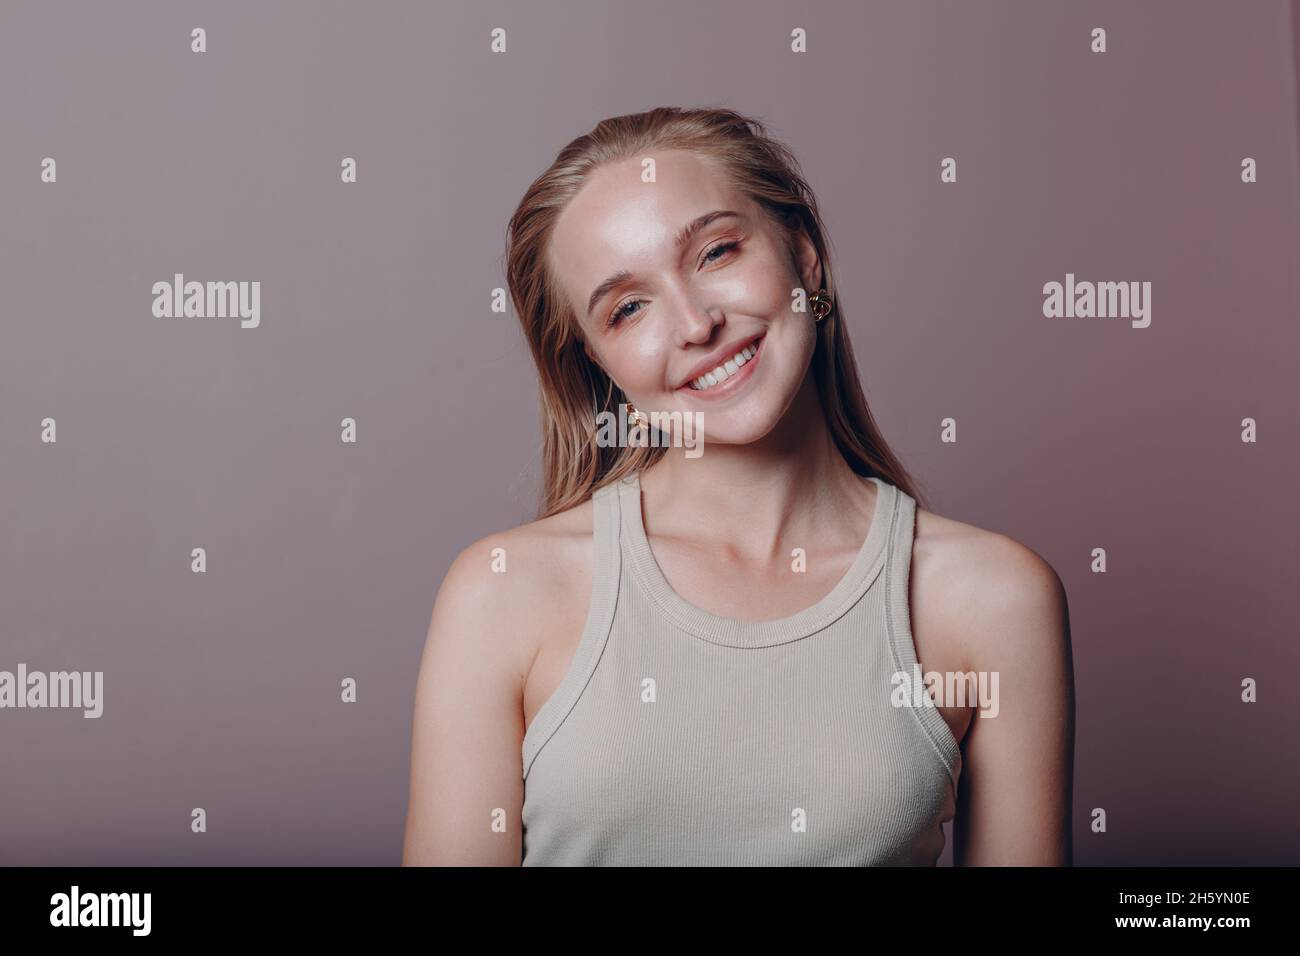 Ritratto di giovane 20-25s anni sorridente donna europea. Bella ragazza bionda felice indossa la t-shirt e guarda la macchina fotografica. Studio sparare isolato su sfondo rosa. Foto Stock